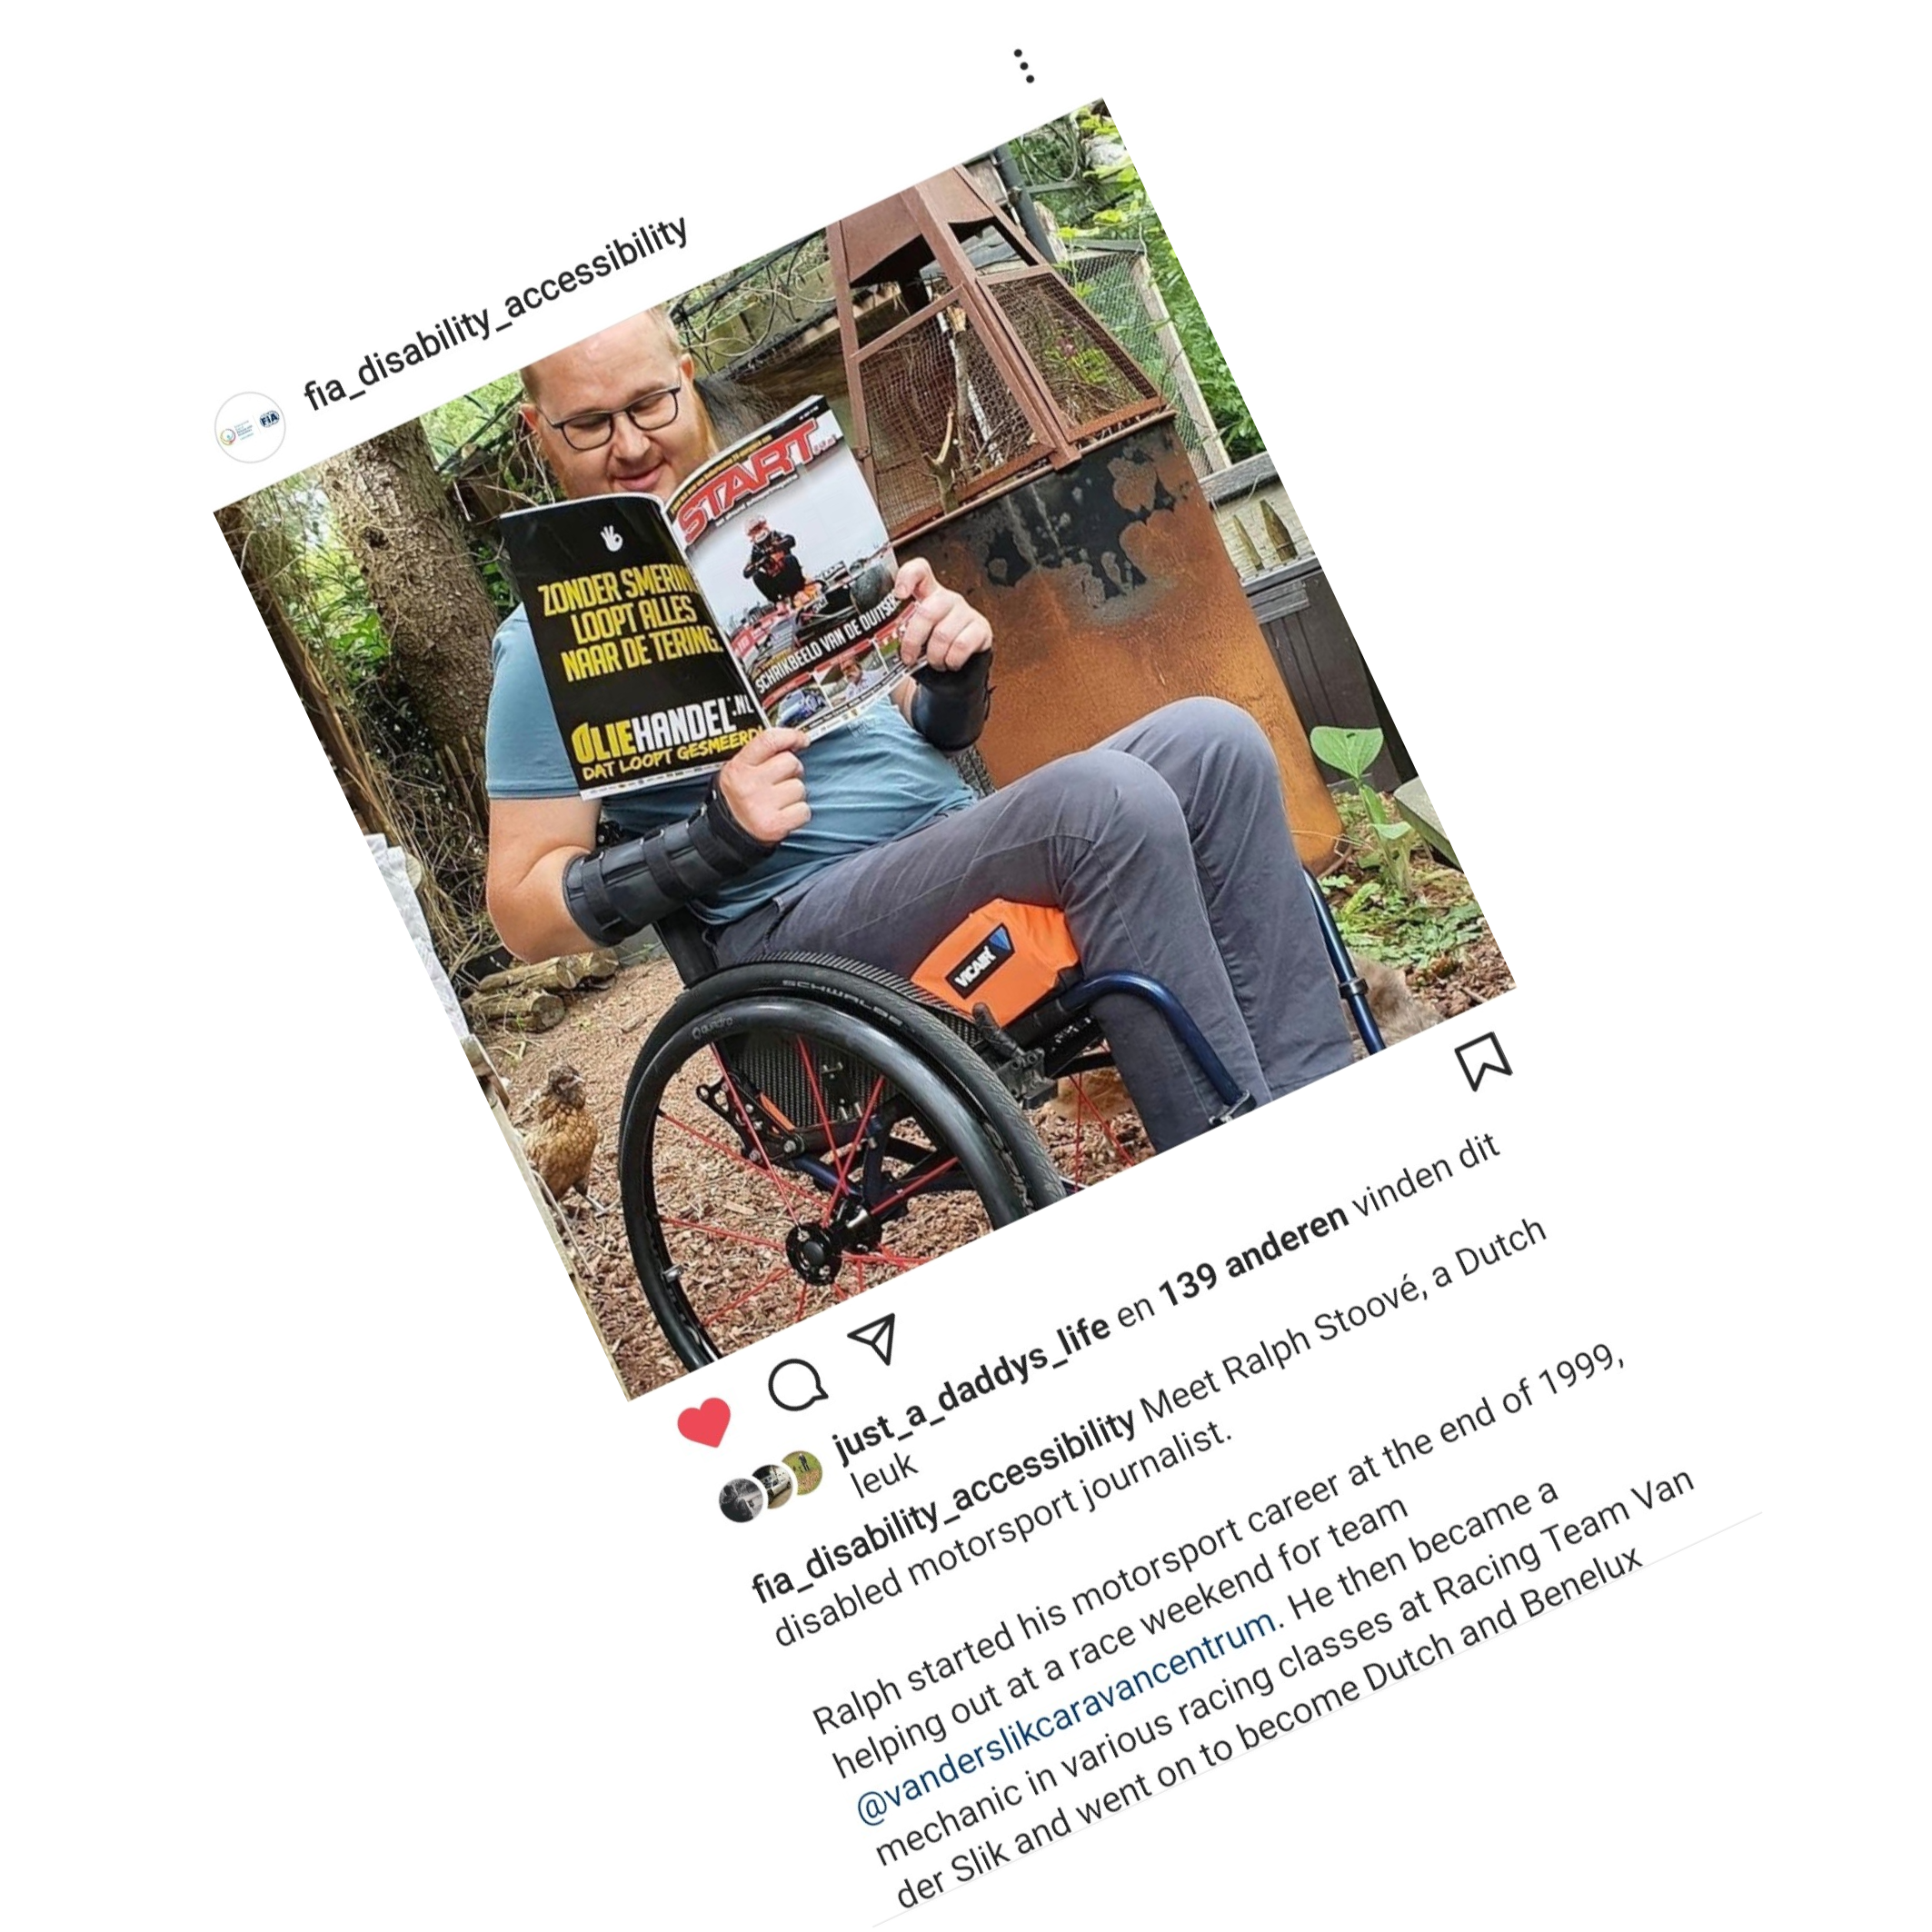 screenshot van het instagram account van FIA Disability and Accessibility Commission met daarop Ralph Stoove zittend in een rolstoel die het Nederlandse autosportmagazine START '84 leest in de tuin